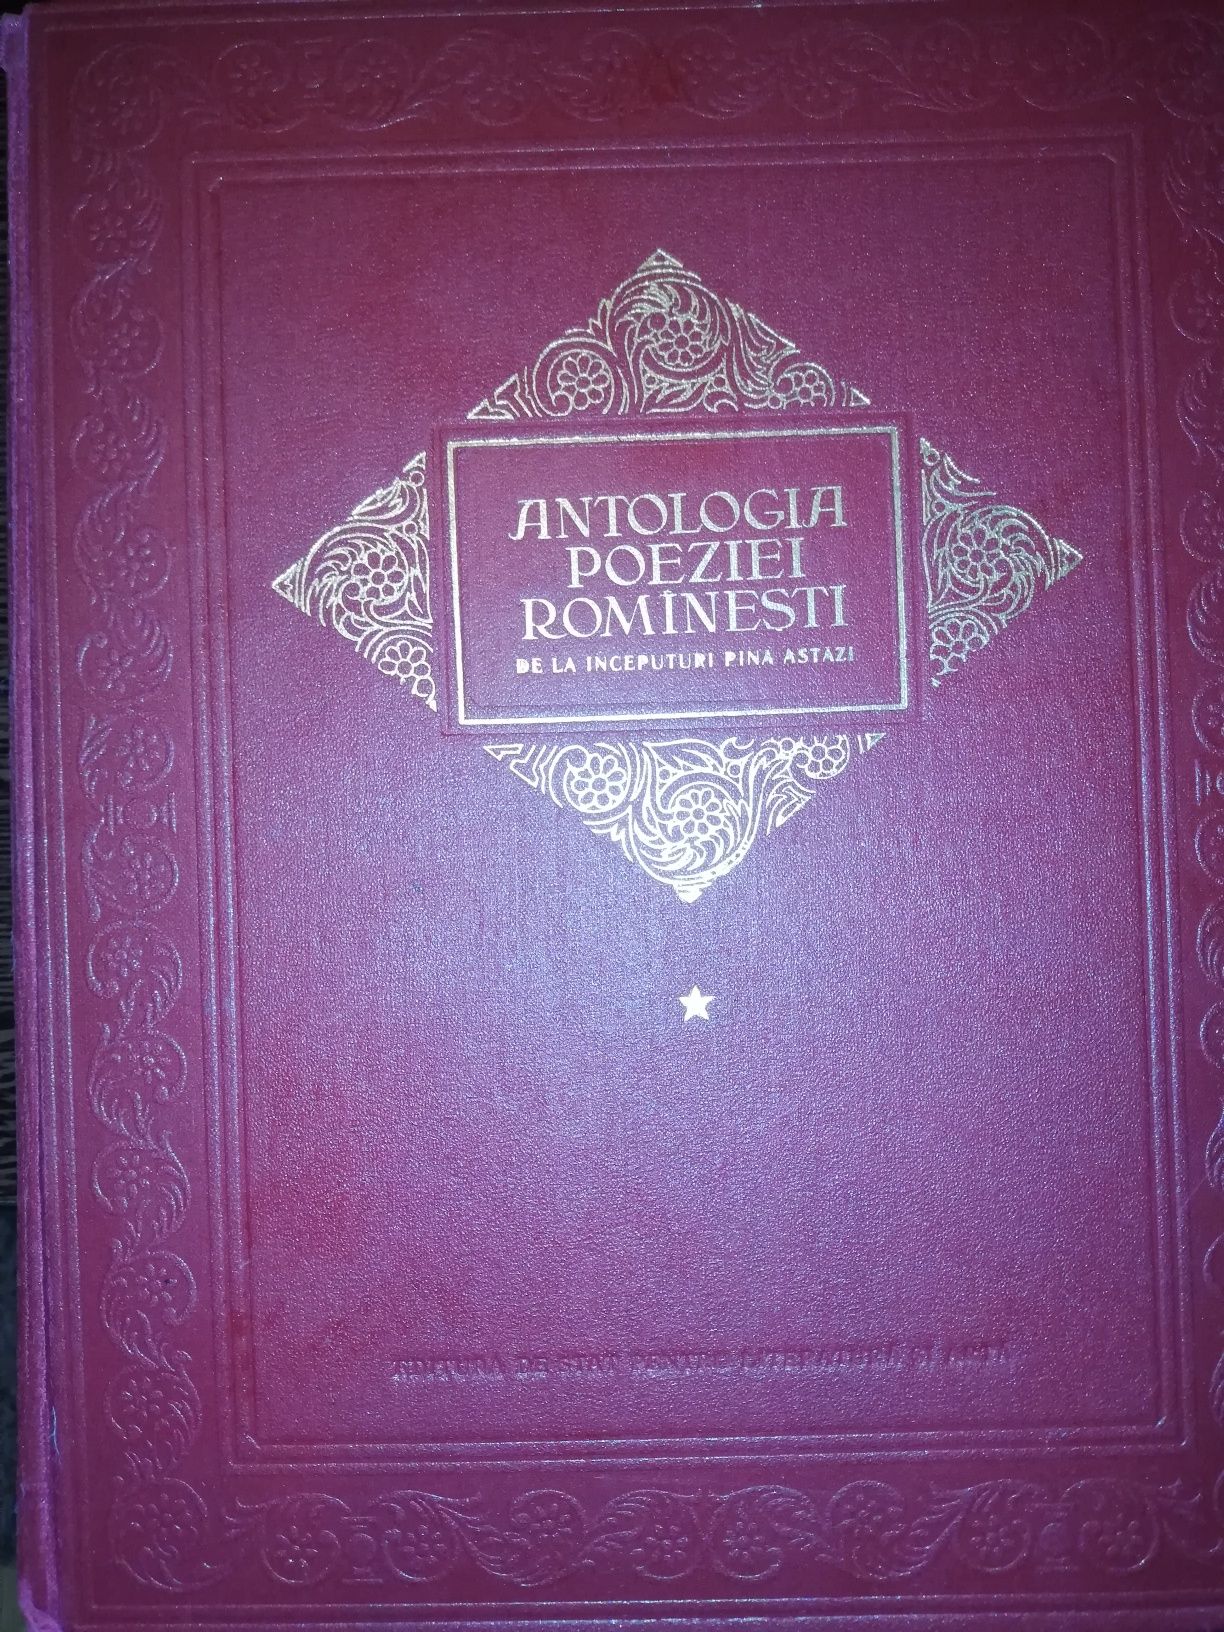 Vând carte veche 1954 Antologia Poeziei Rominesti